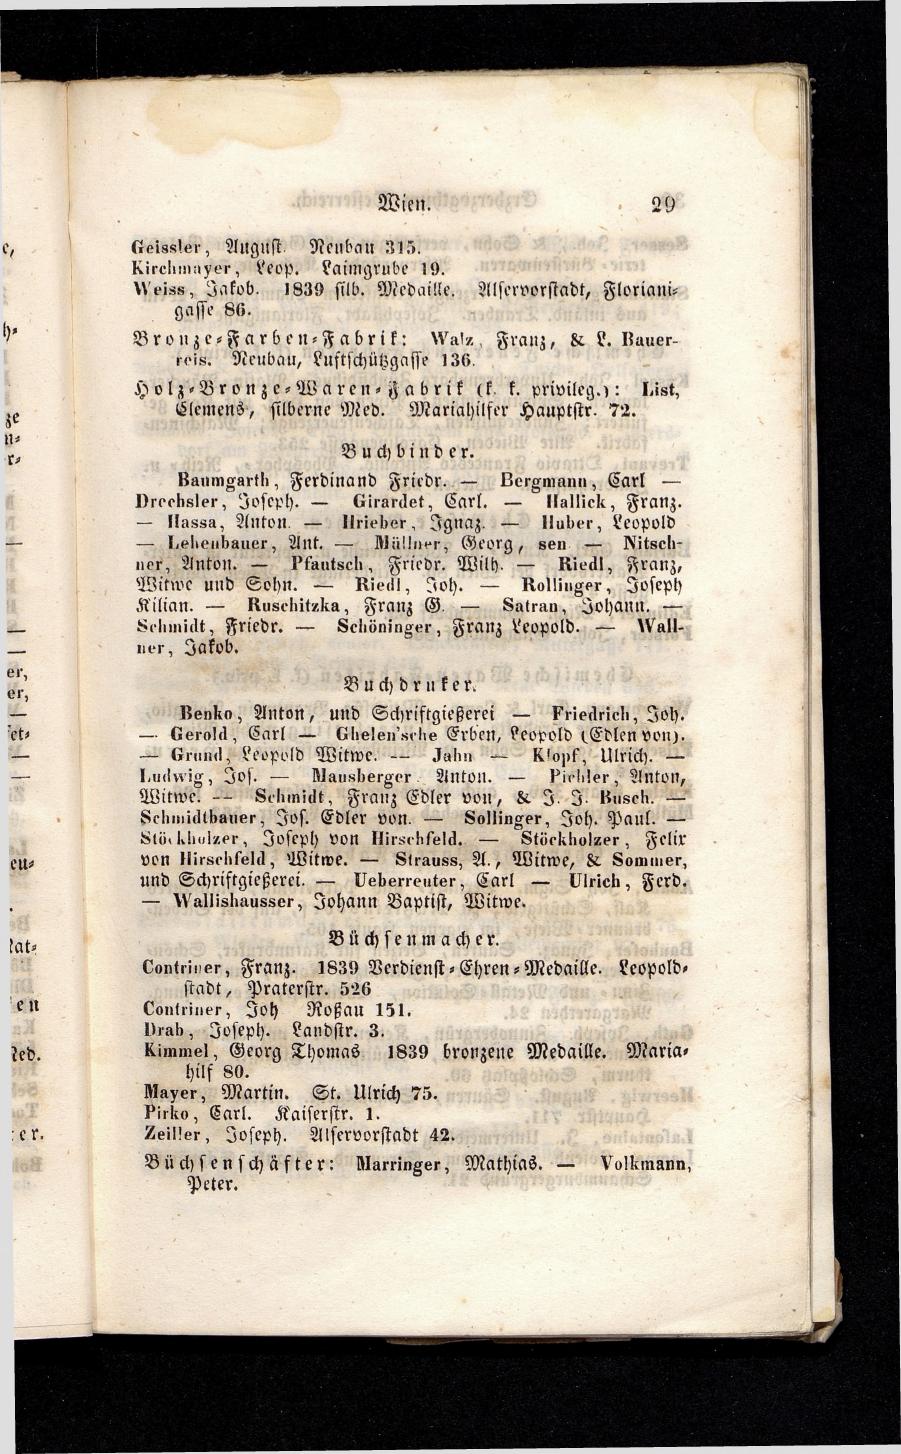 Grosses Adressbuch der Kaufleute. No. 13. Oesterreich ober u. unter der Enns 1844 - Seite 33